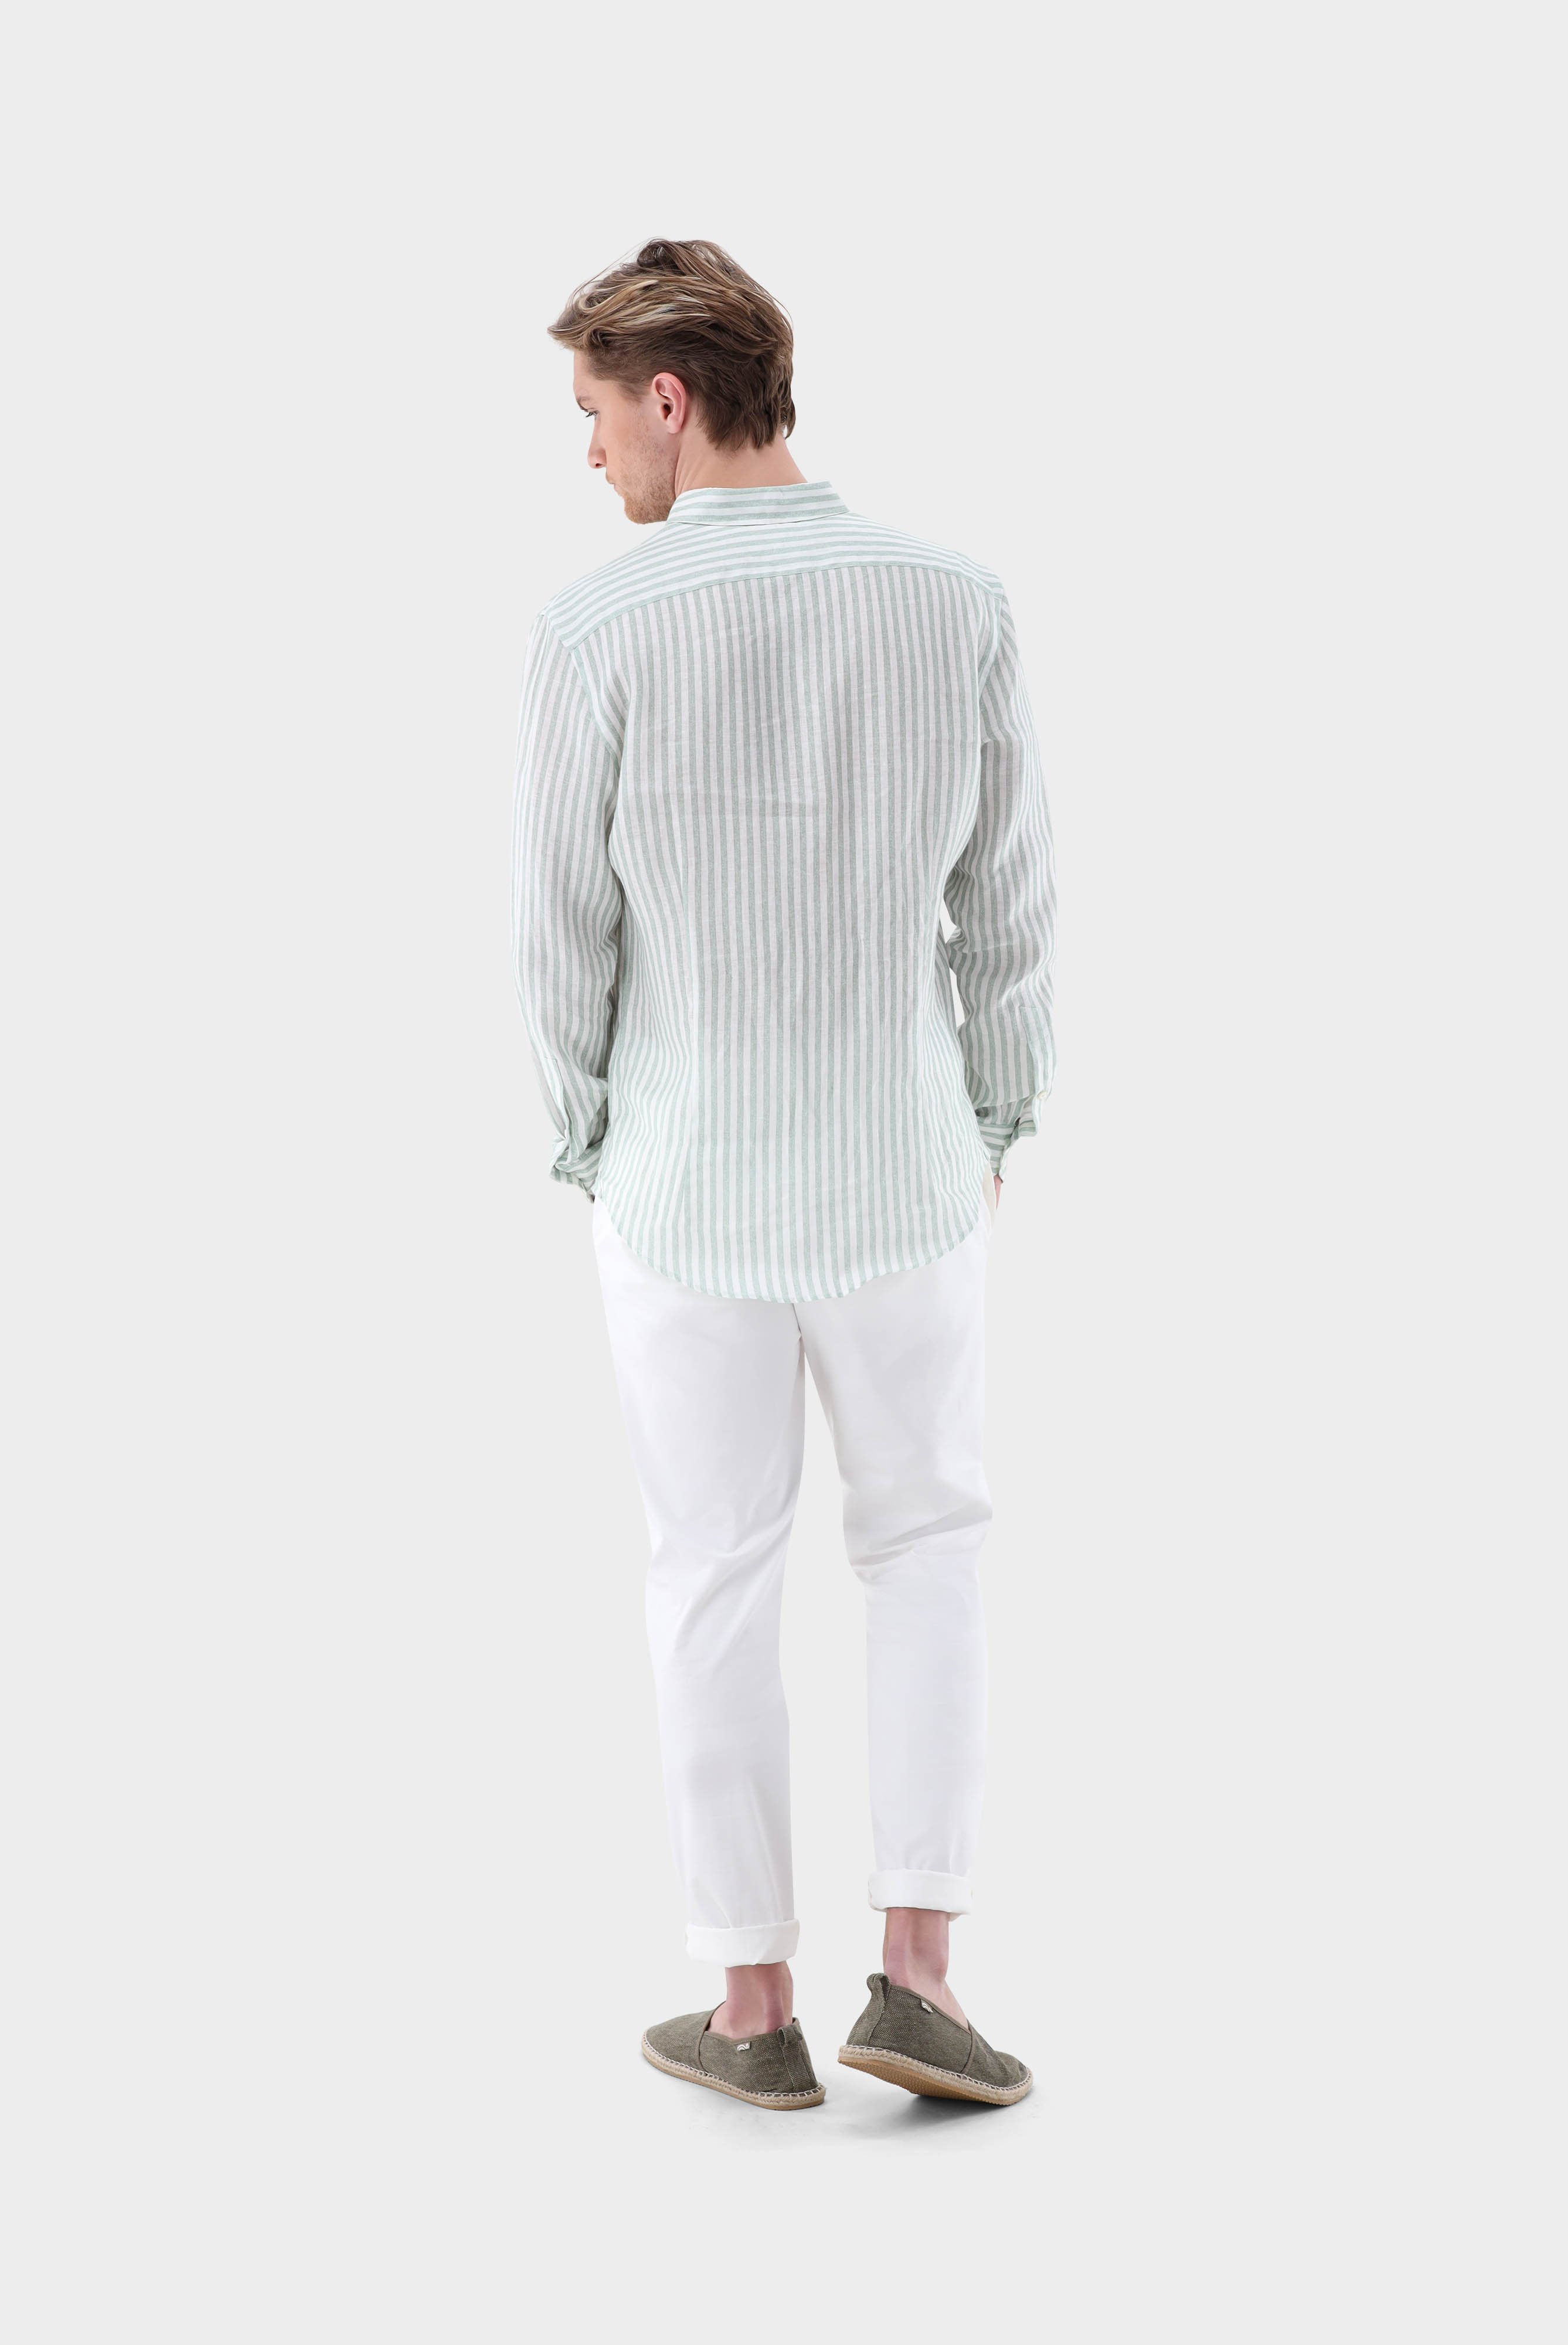 Casual Hemden+Leinenhemd mit Streifen-Druck Tailor Fit+20.2013.9V.170352.940.42